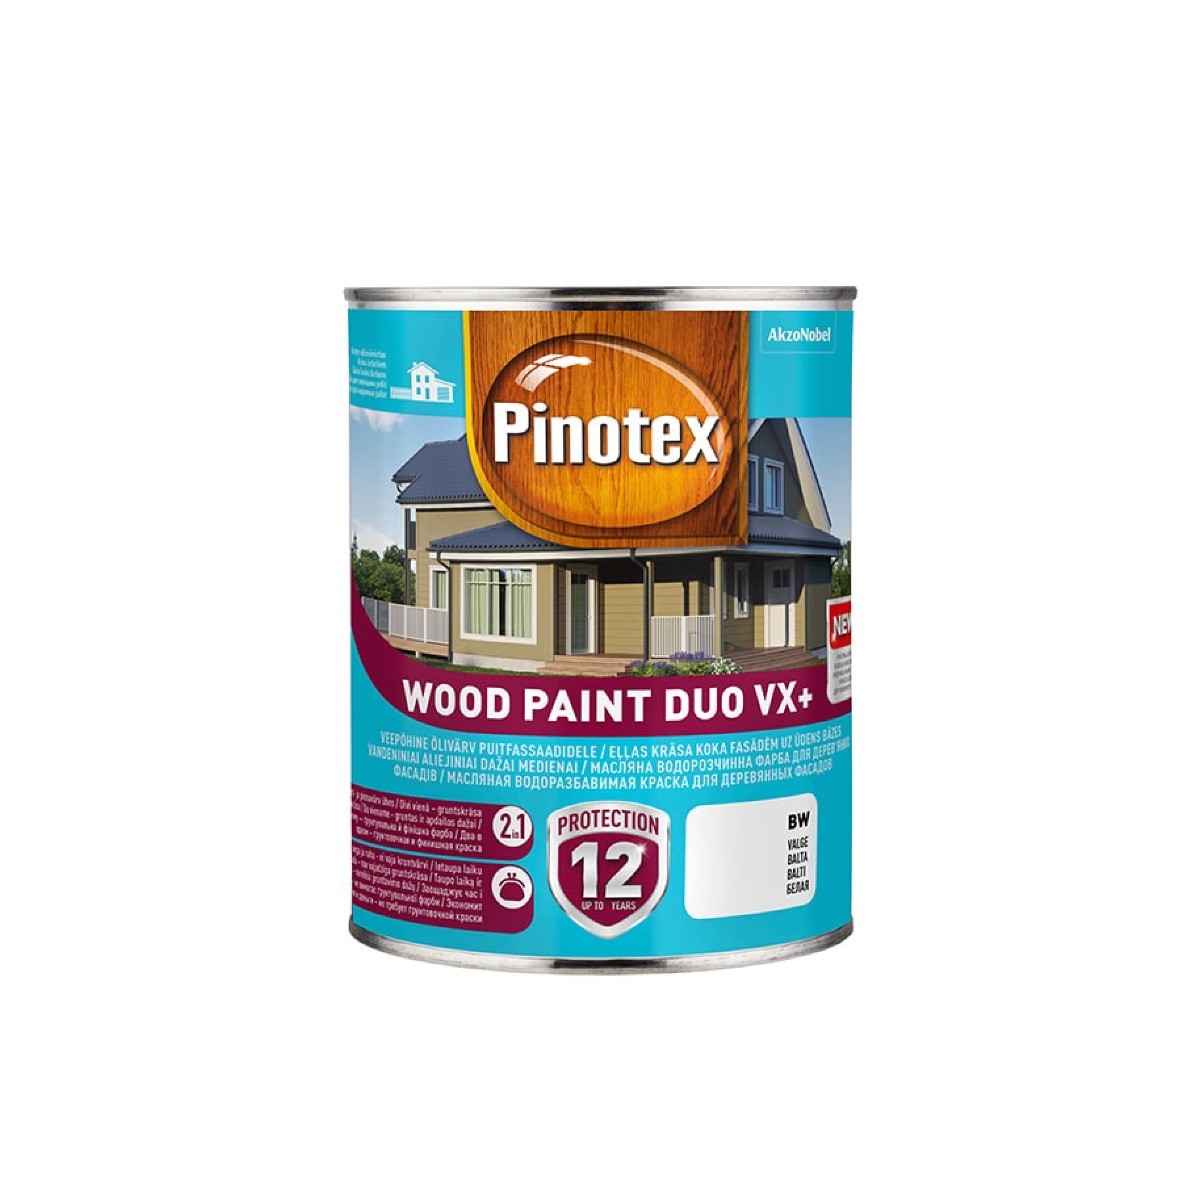 Pinotex Wood Paint Duo VX+ Ūdens bāzes eļļas krāsa koka fasādēm, pusmatēta BW 1L